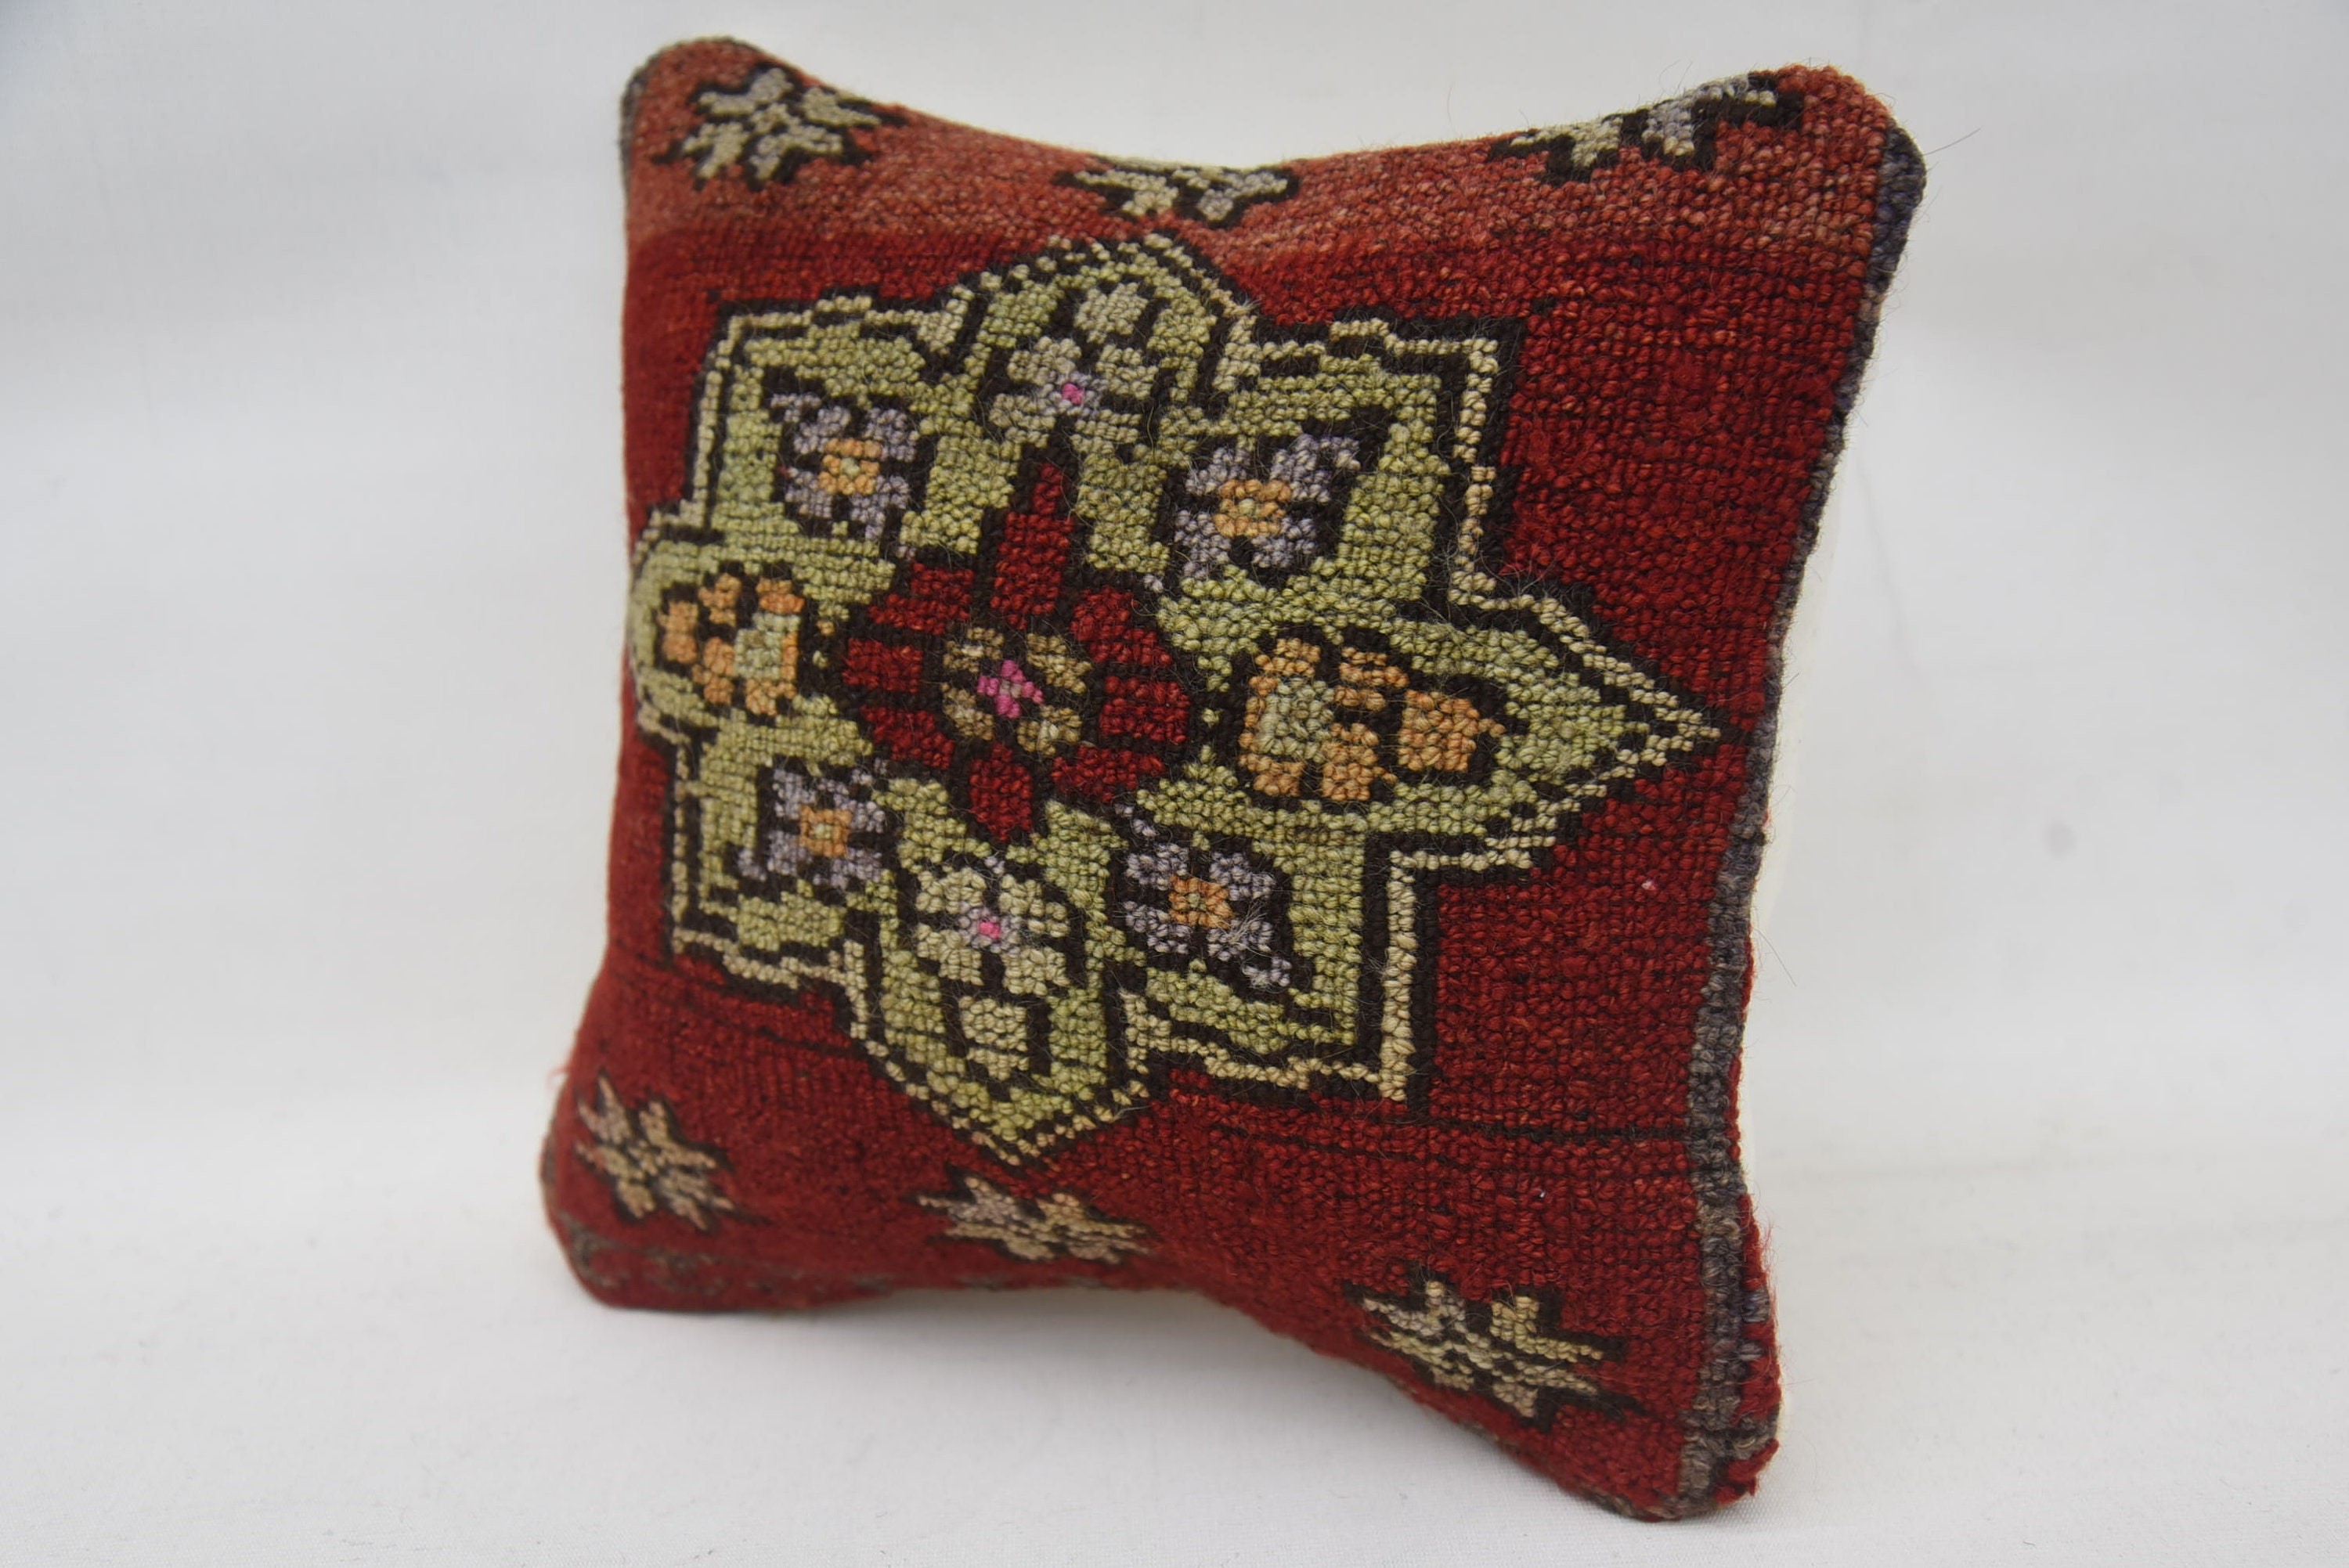 Handmade Kilim Cushion, Interior Designer Pillow, Vintage Kilim Pillow Pillow Cover, Kilim Pillow, 12"x12" Red Pillow Sham